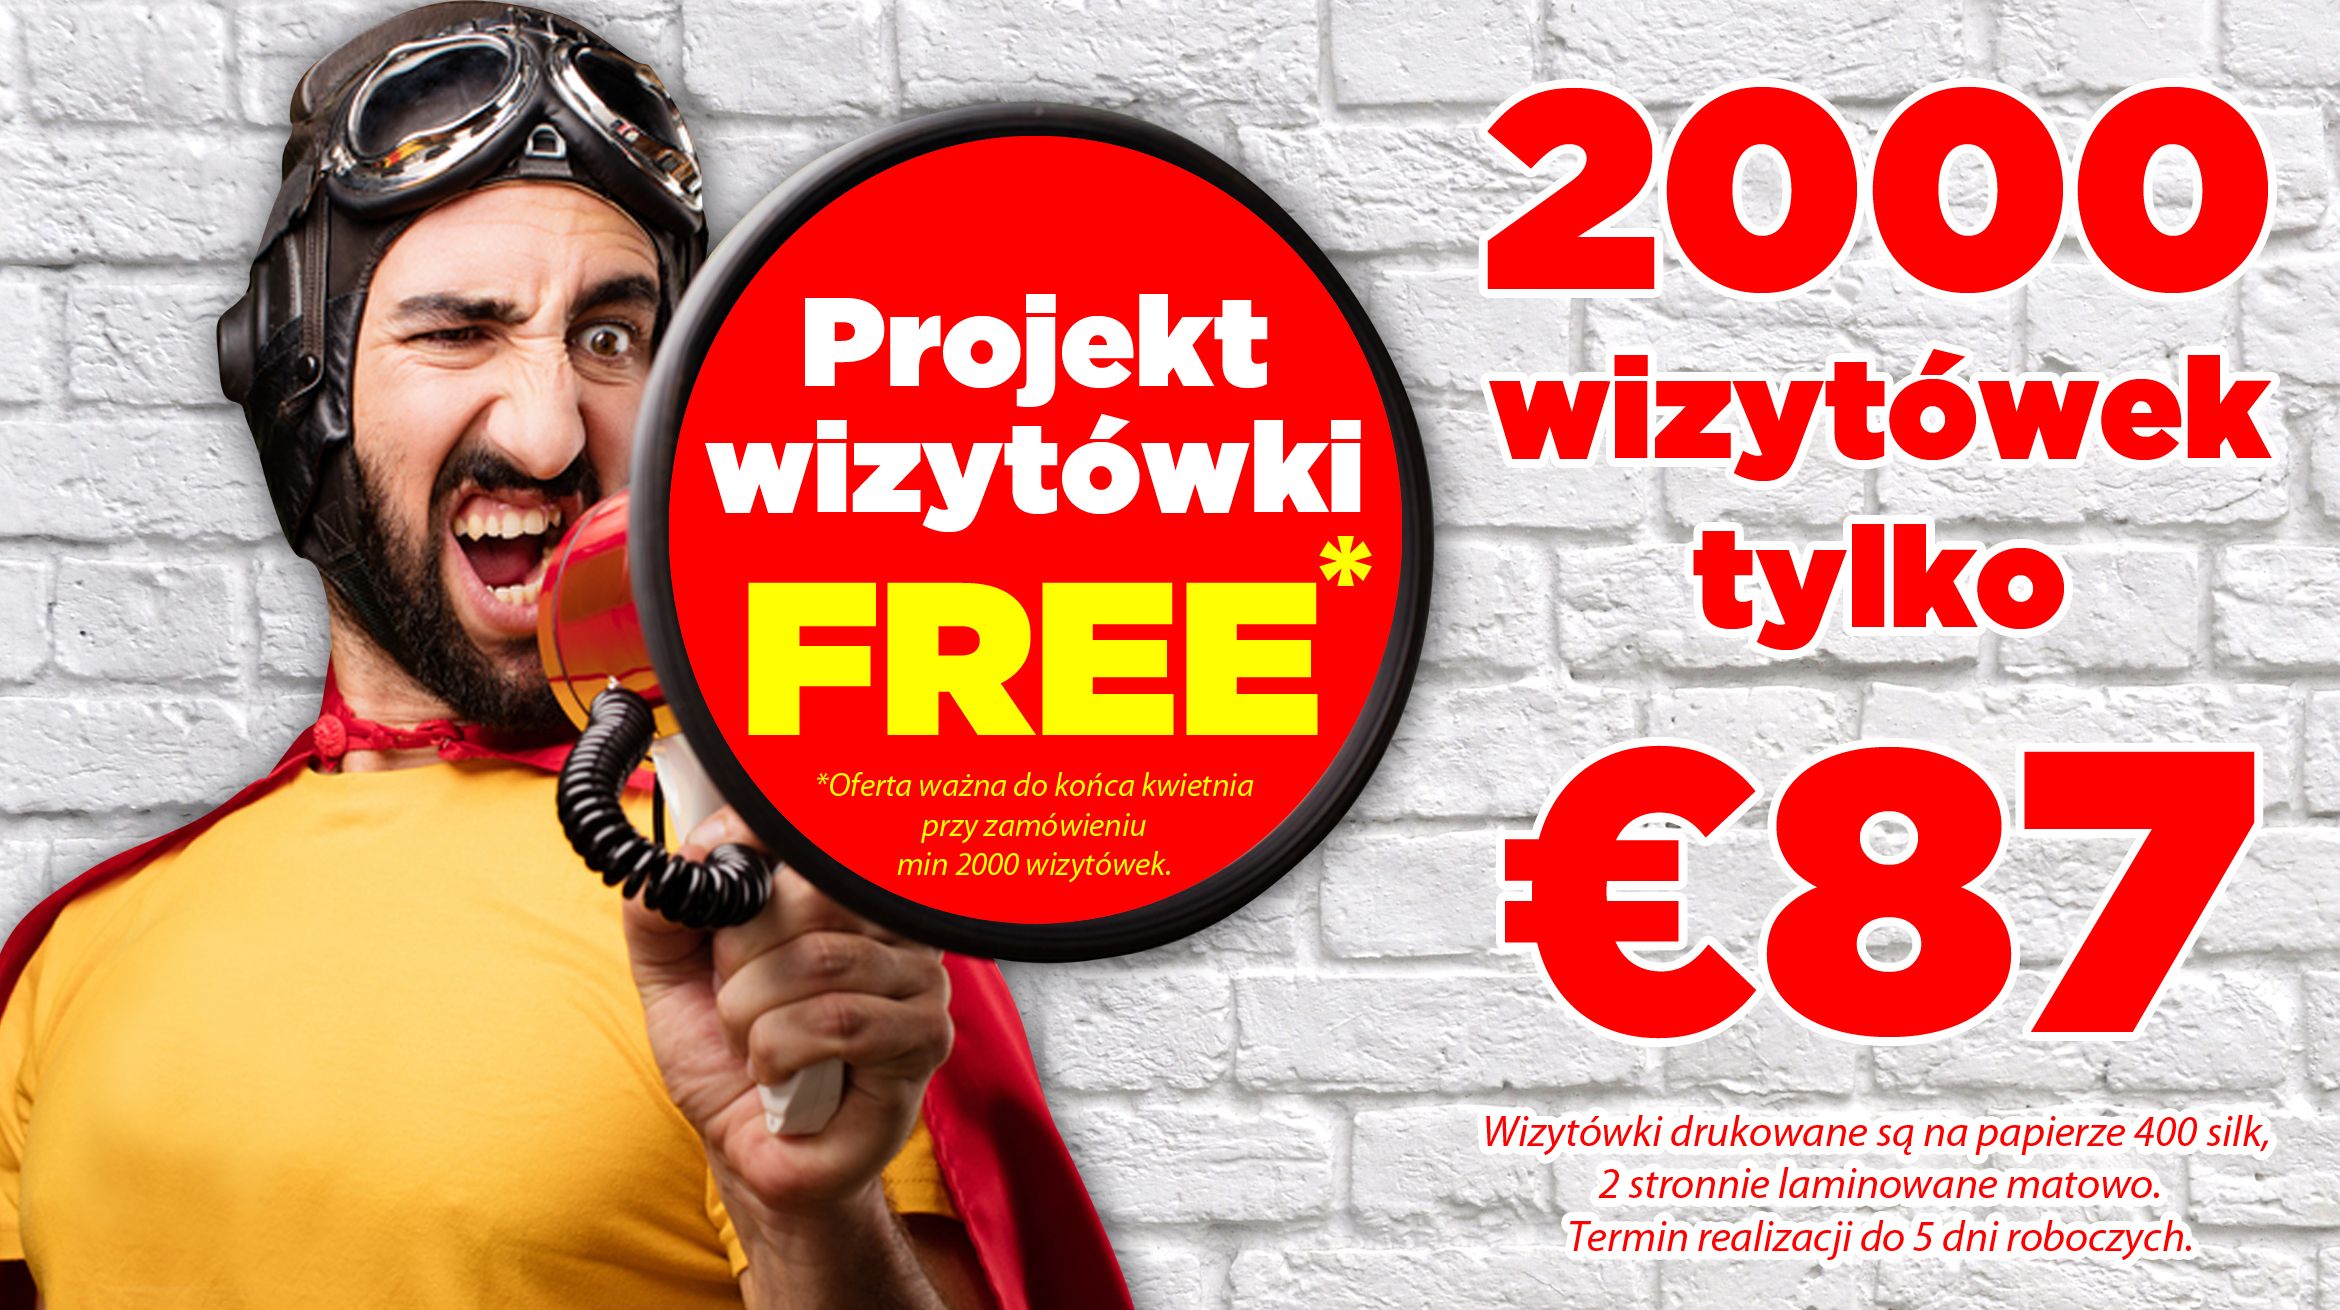 Polska drukarnia oferta specjalna